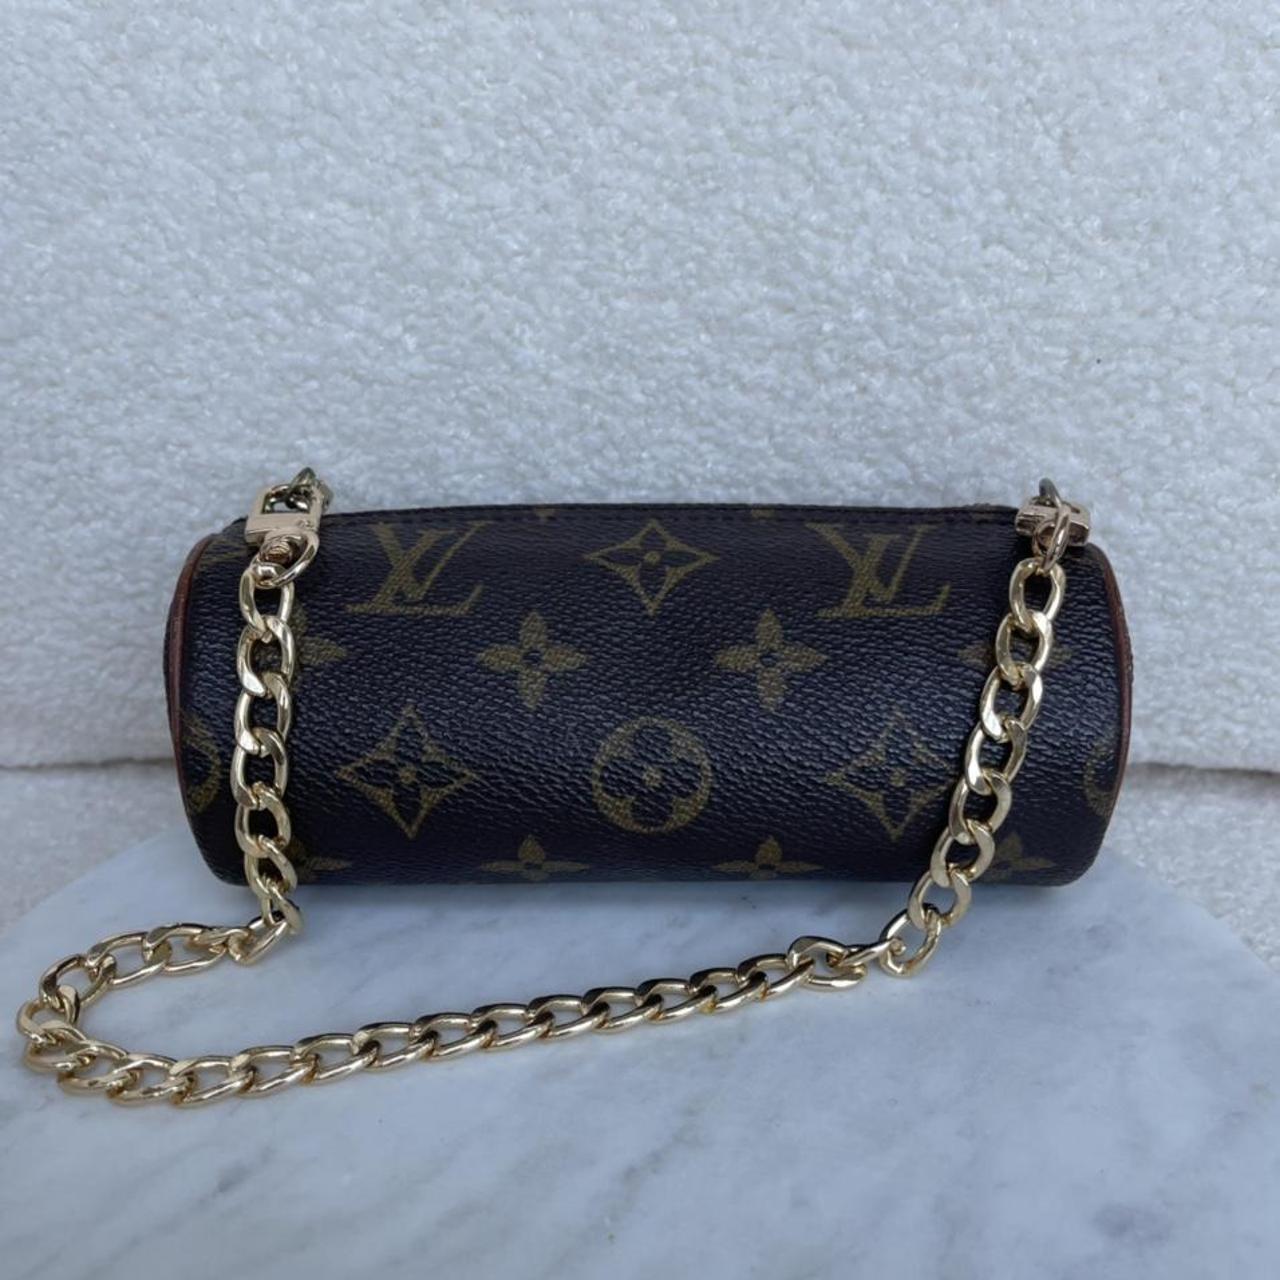 Authentic Vintage Louis Vuitton purse - Depop